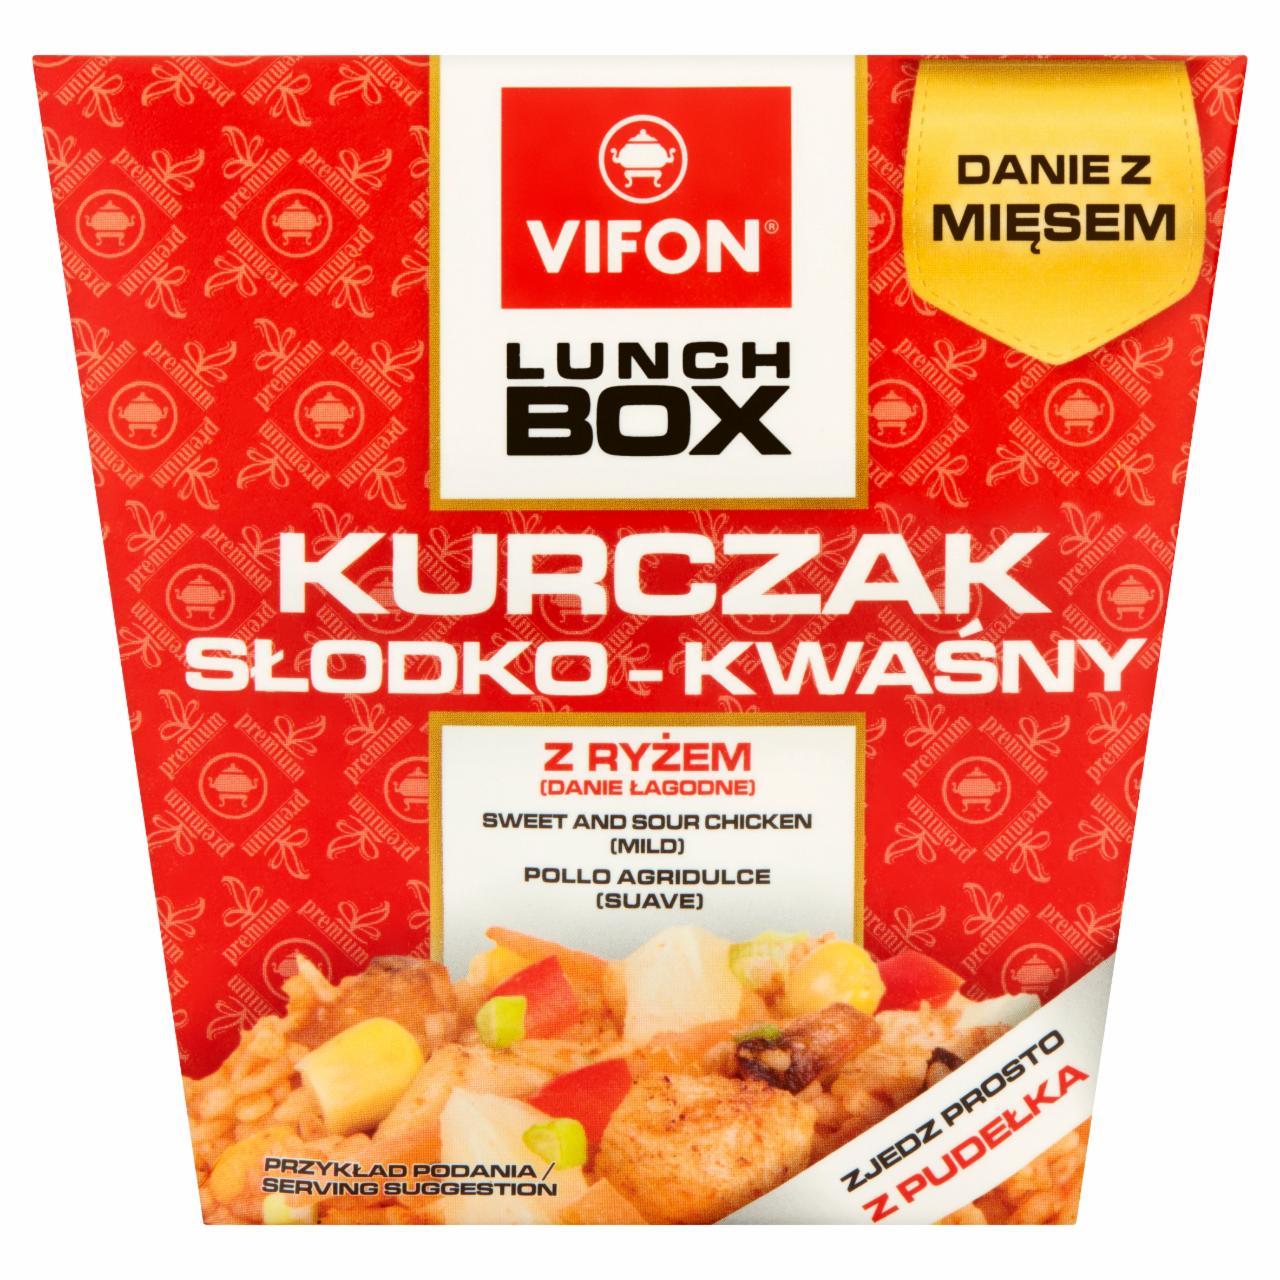 Zdjęcia - Vifon Lunch Box Danie błyskawiczne kurczak słodko-kwaśny 177 g